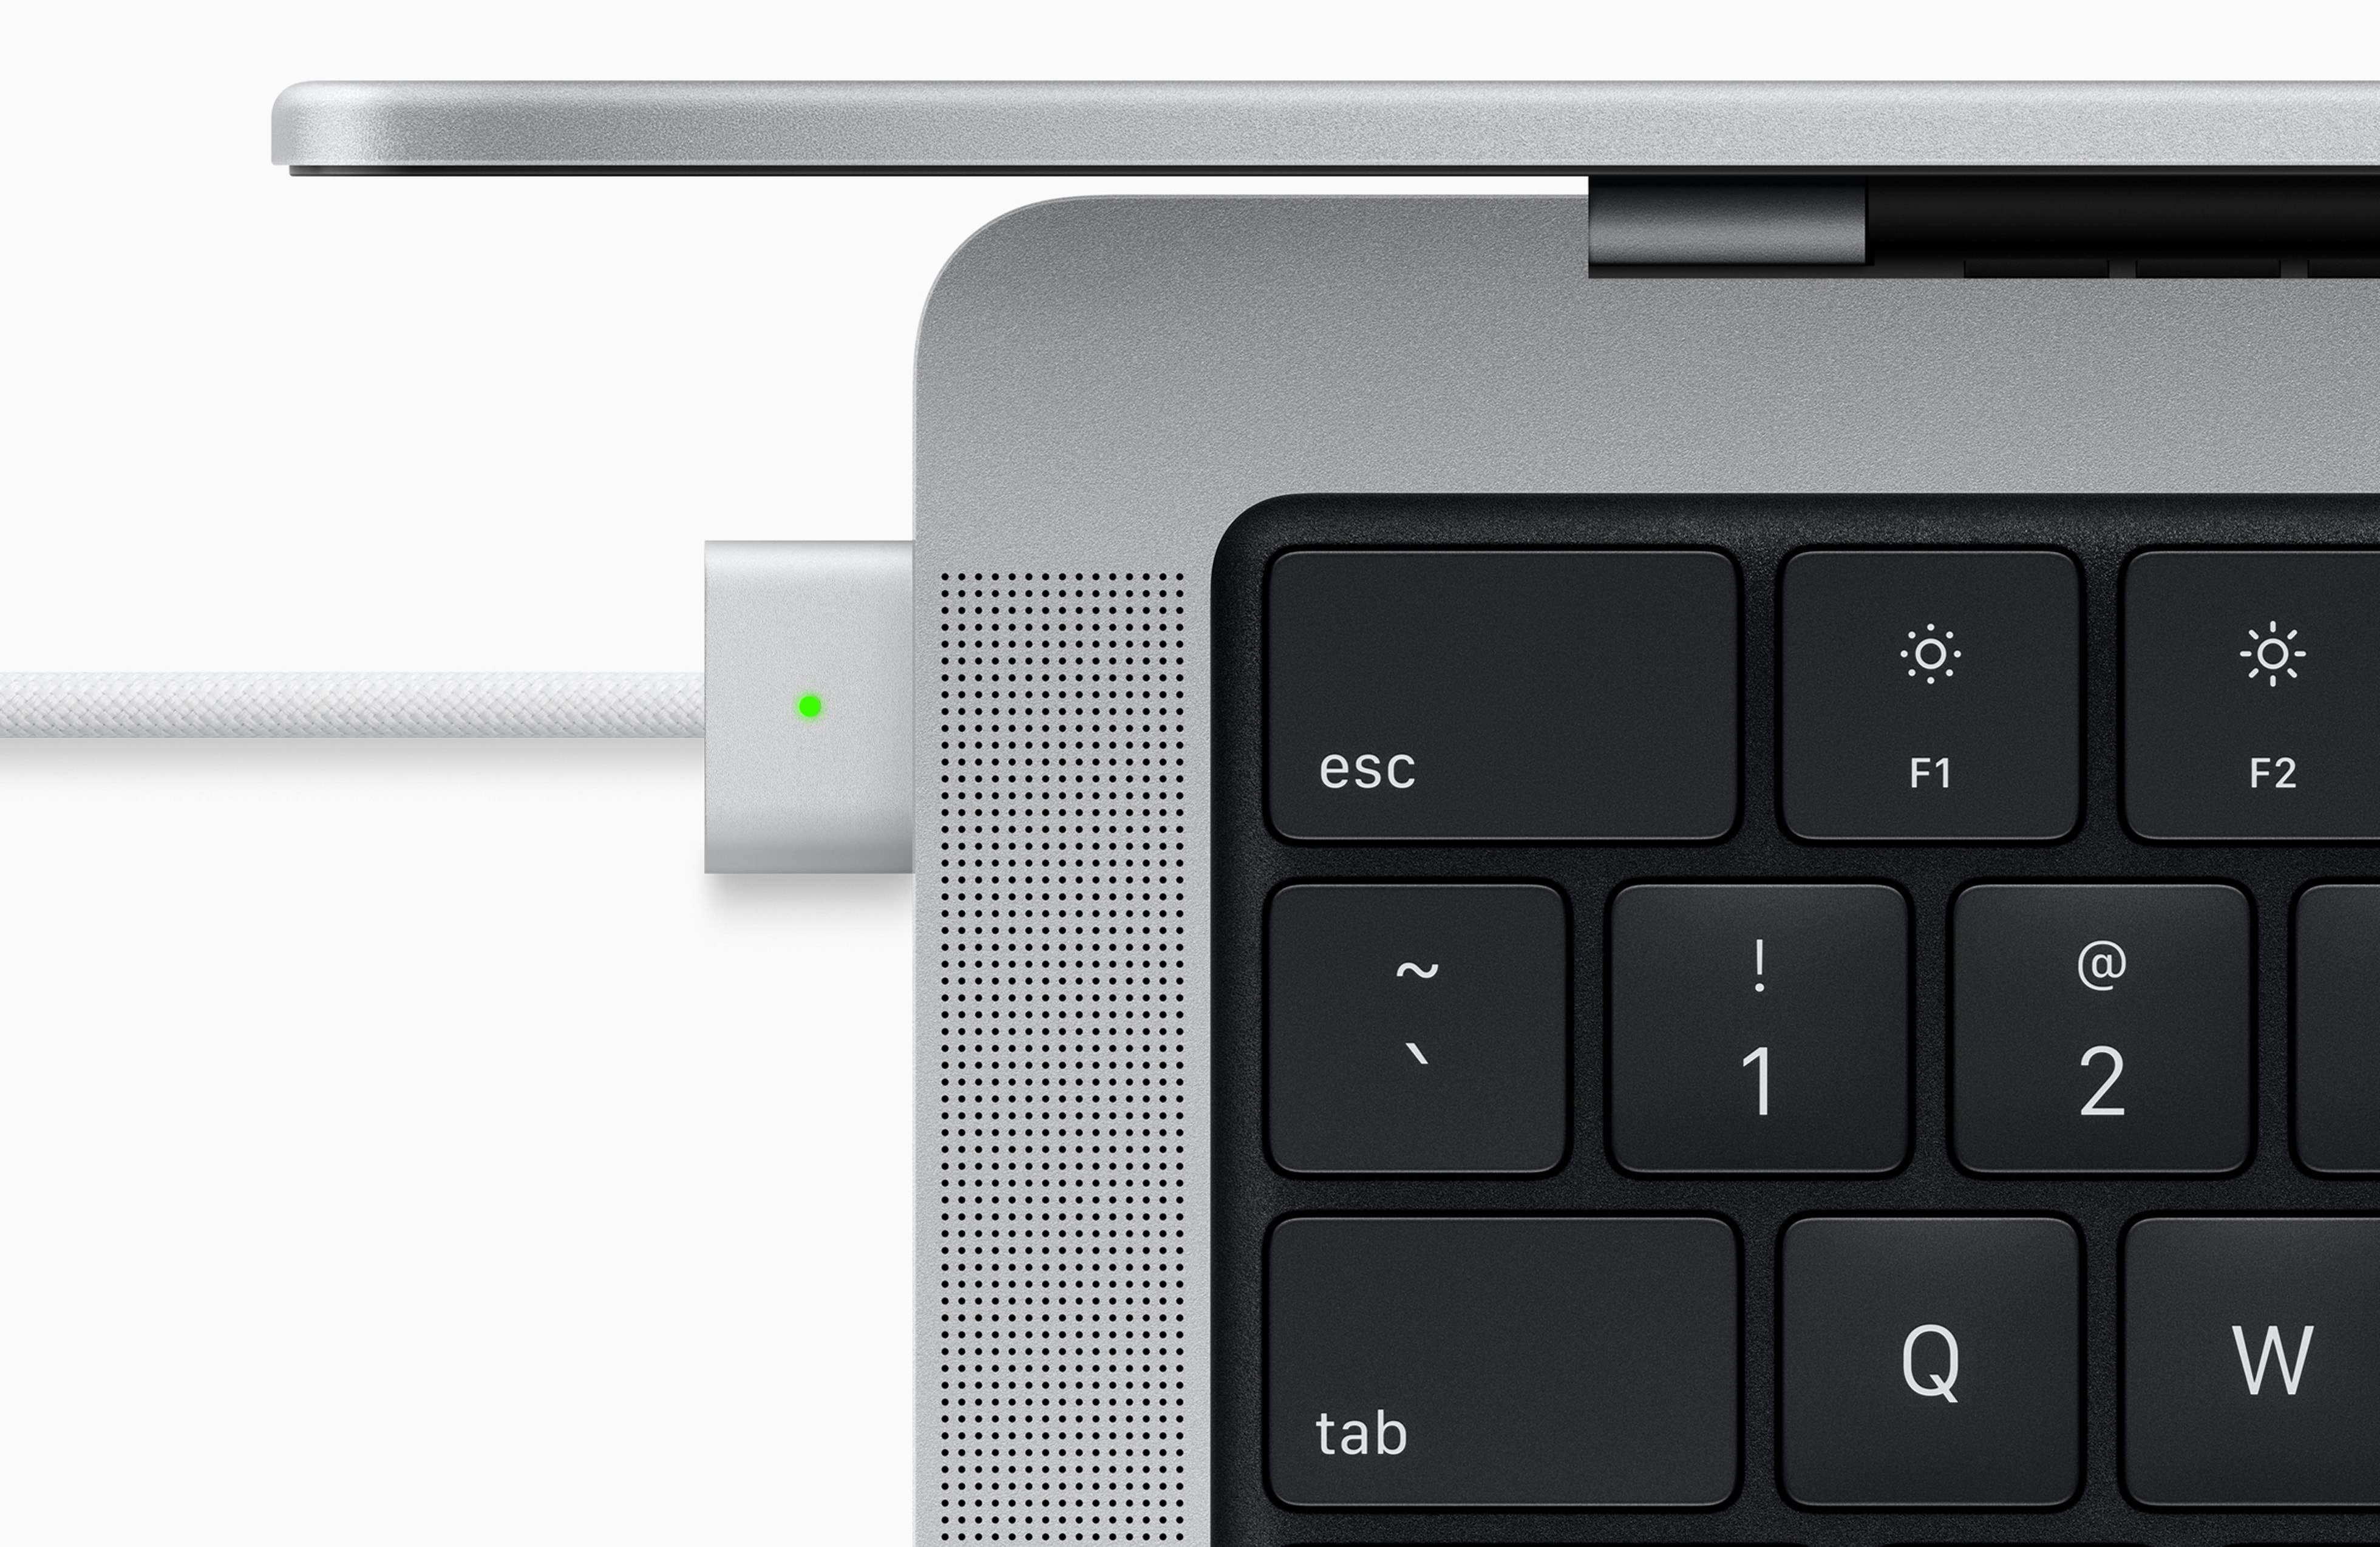 apple redesign macbook pro